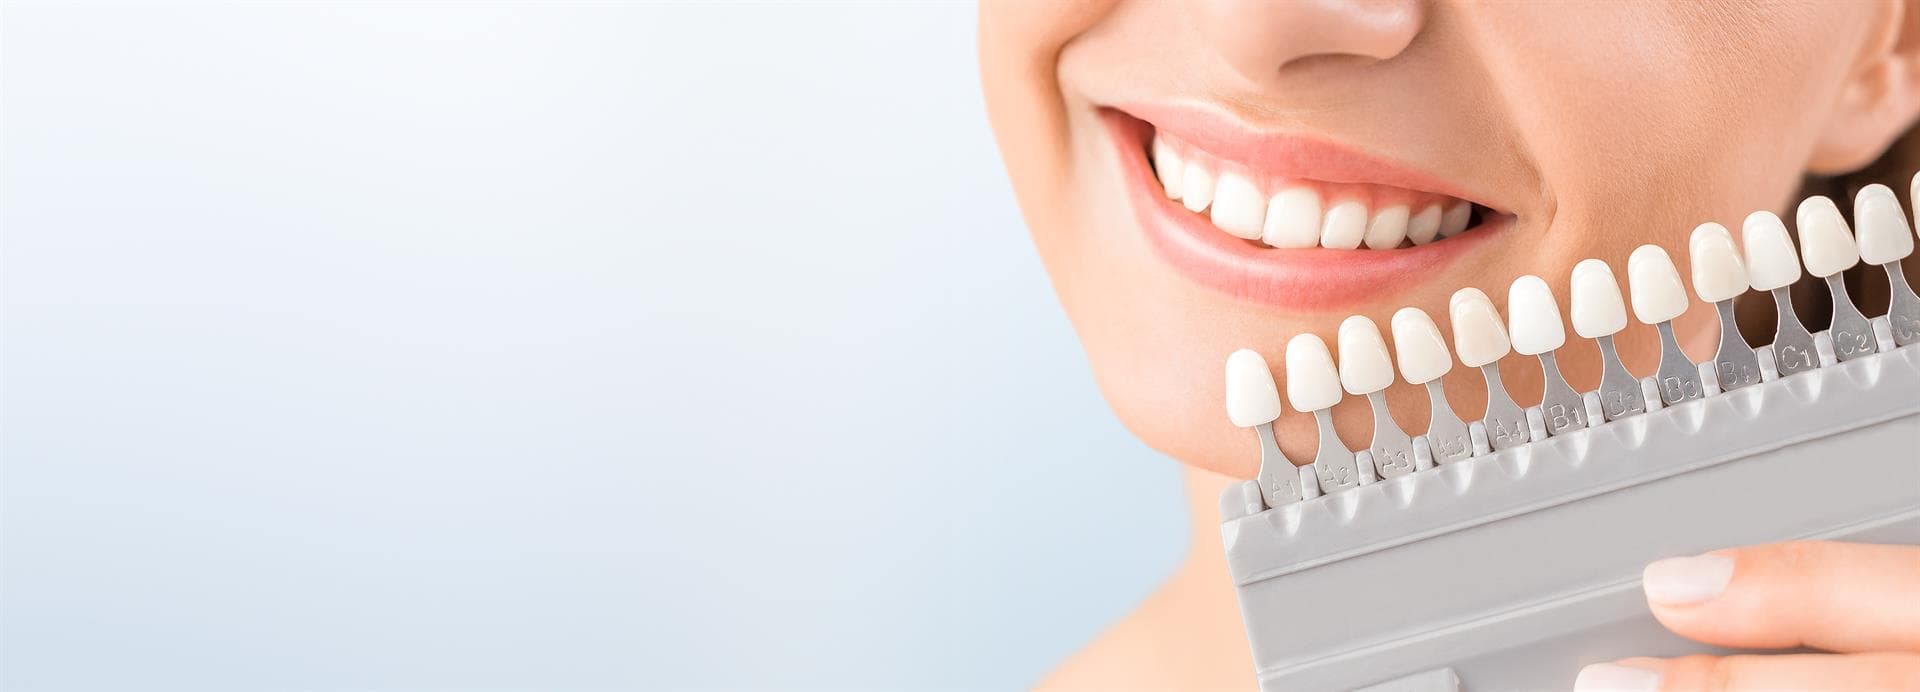 Un color uniforme en los dientes con el tratamiento de blanqueamiento dental